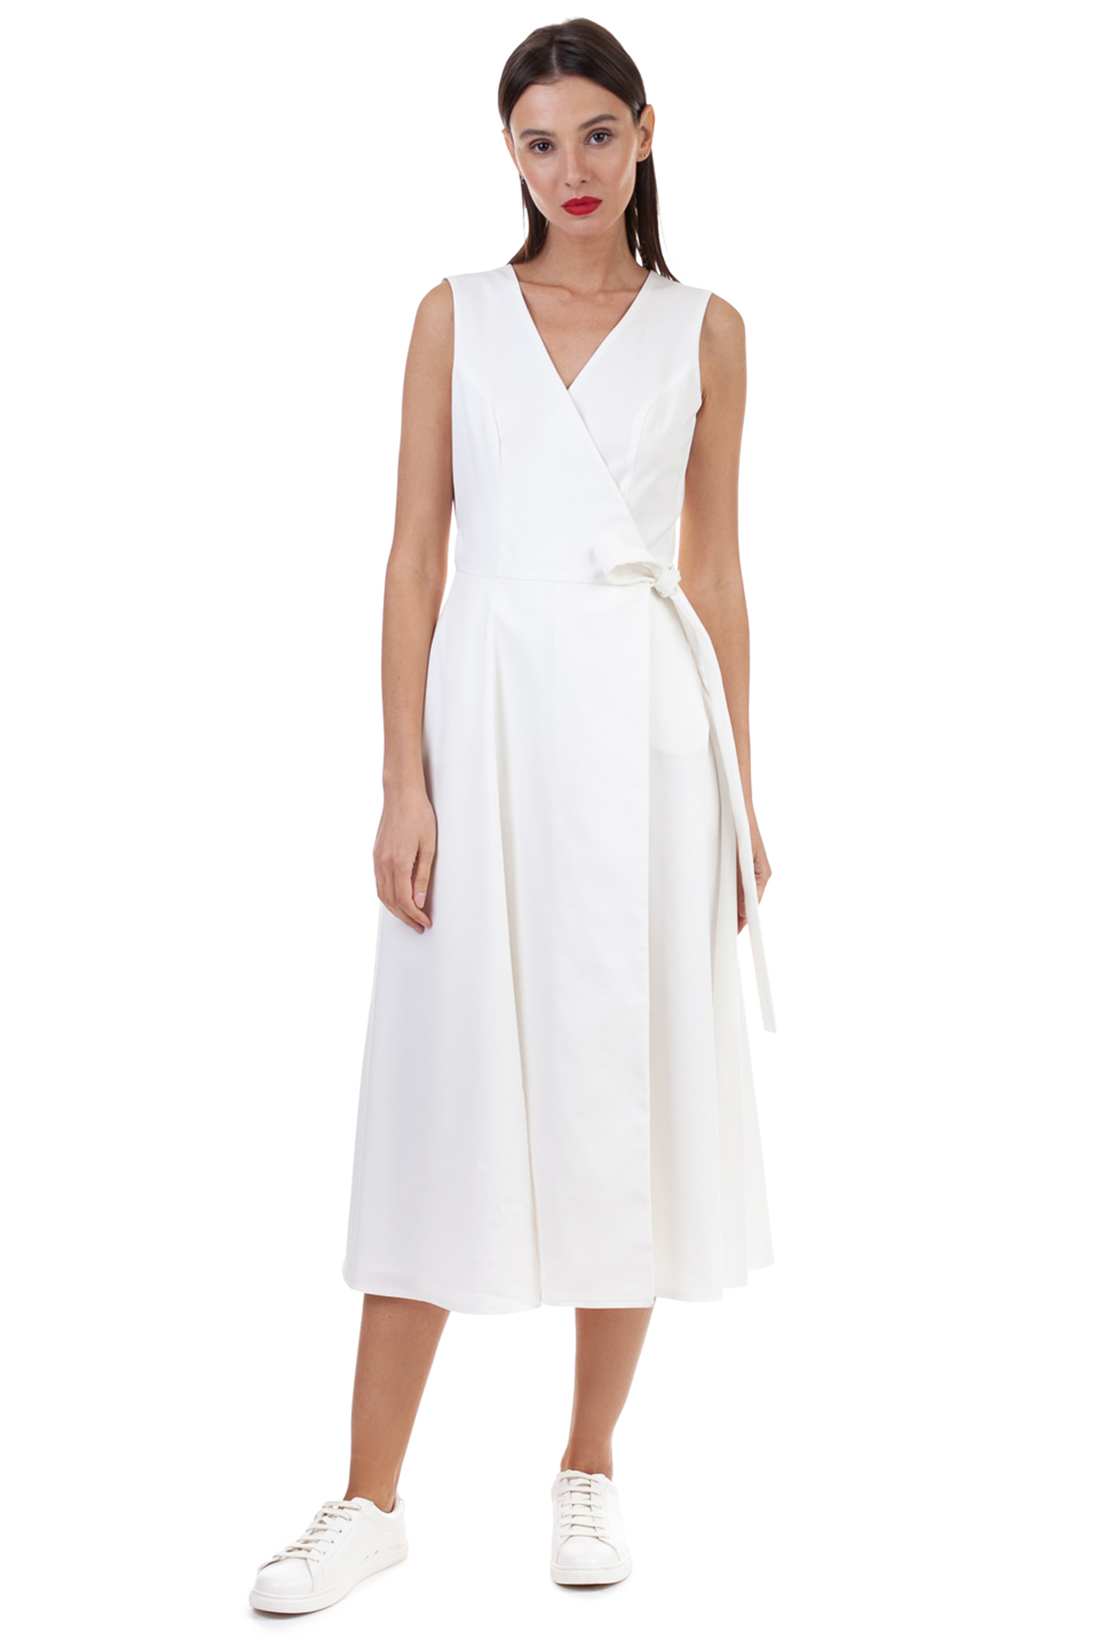 Белое платье с запахом (арт. baon B458125), размер M, цвет белый Белое платье с запахом (арт. baon B458125) - фото 6